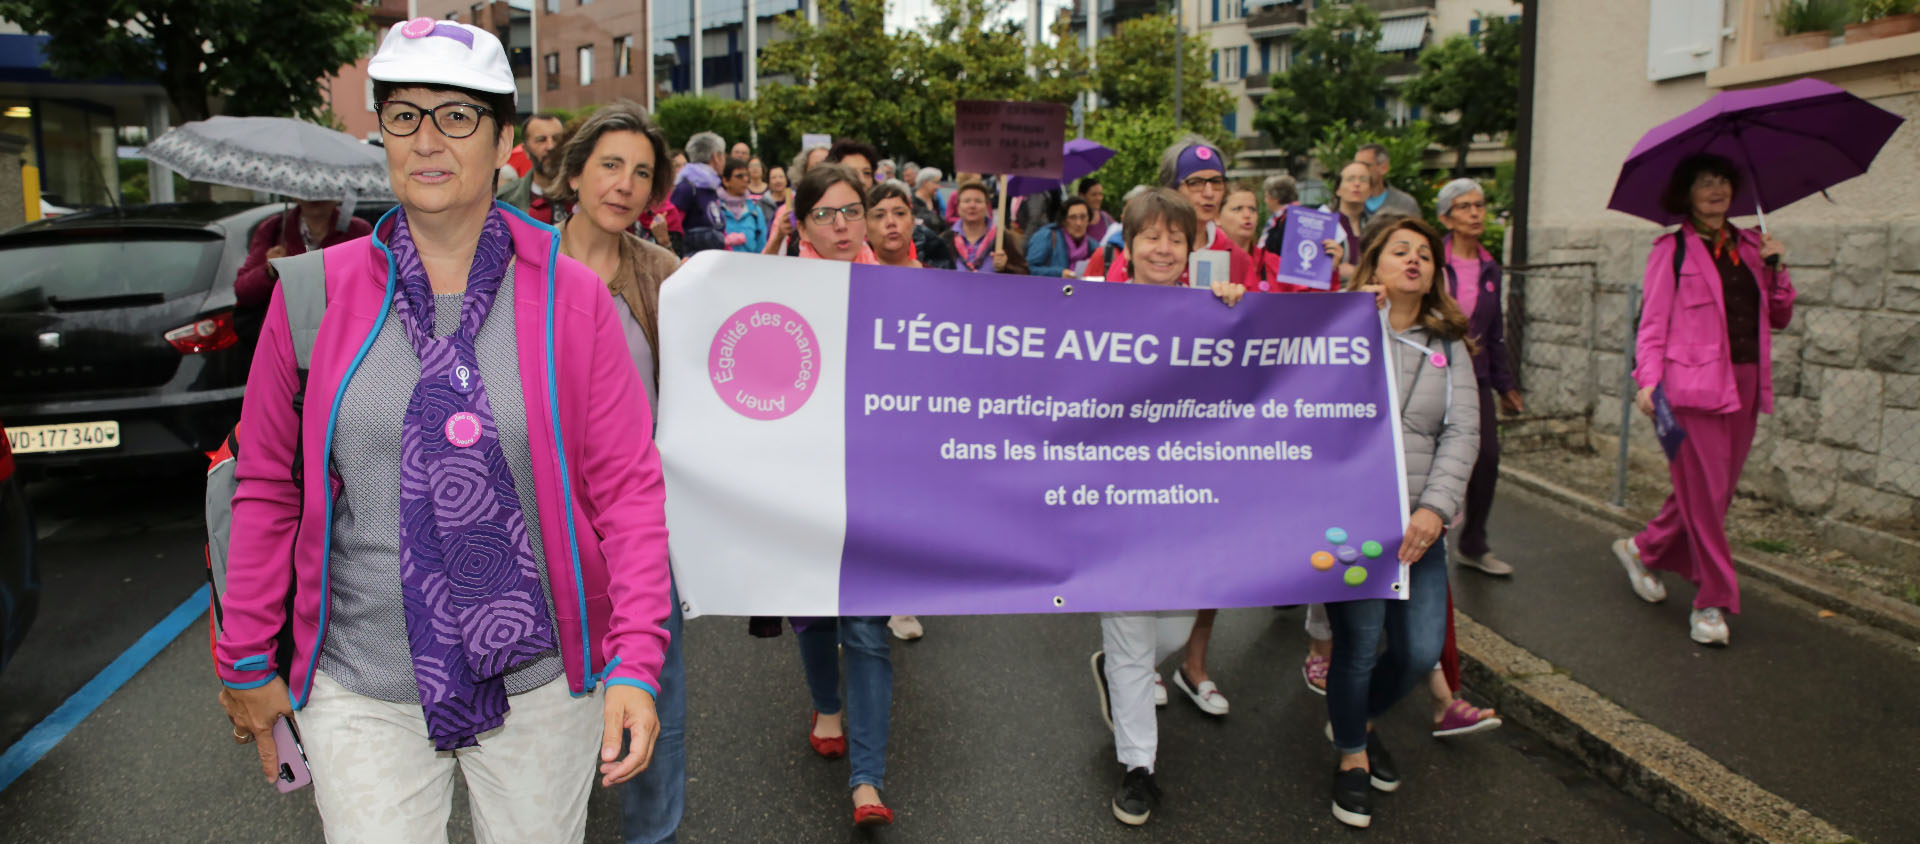 Depuis la grève des femmes, ici en 2019 à Lausanne, la situation a évolué | © Bernard Hallet